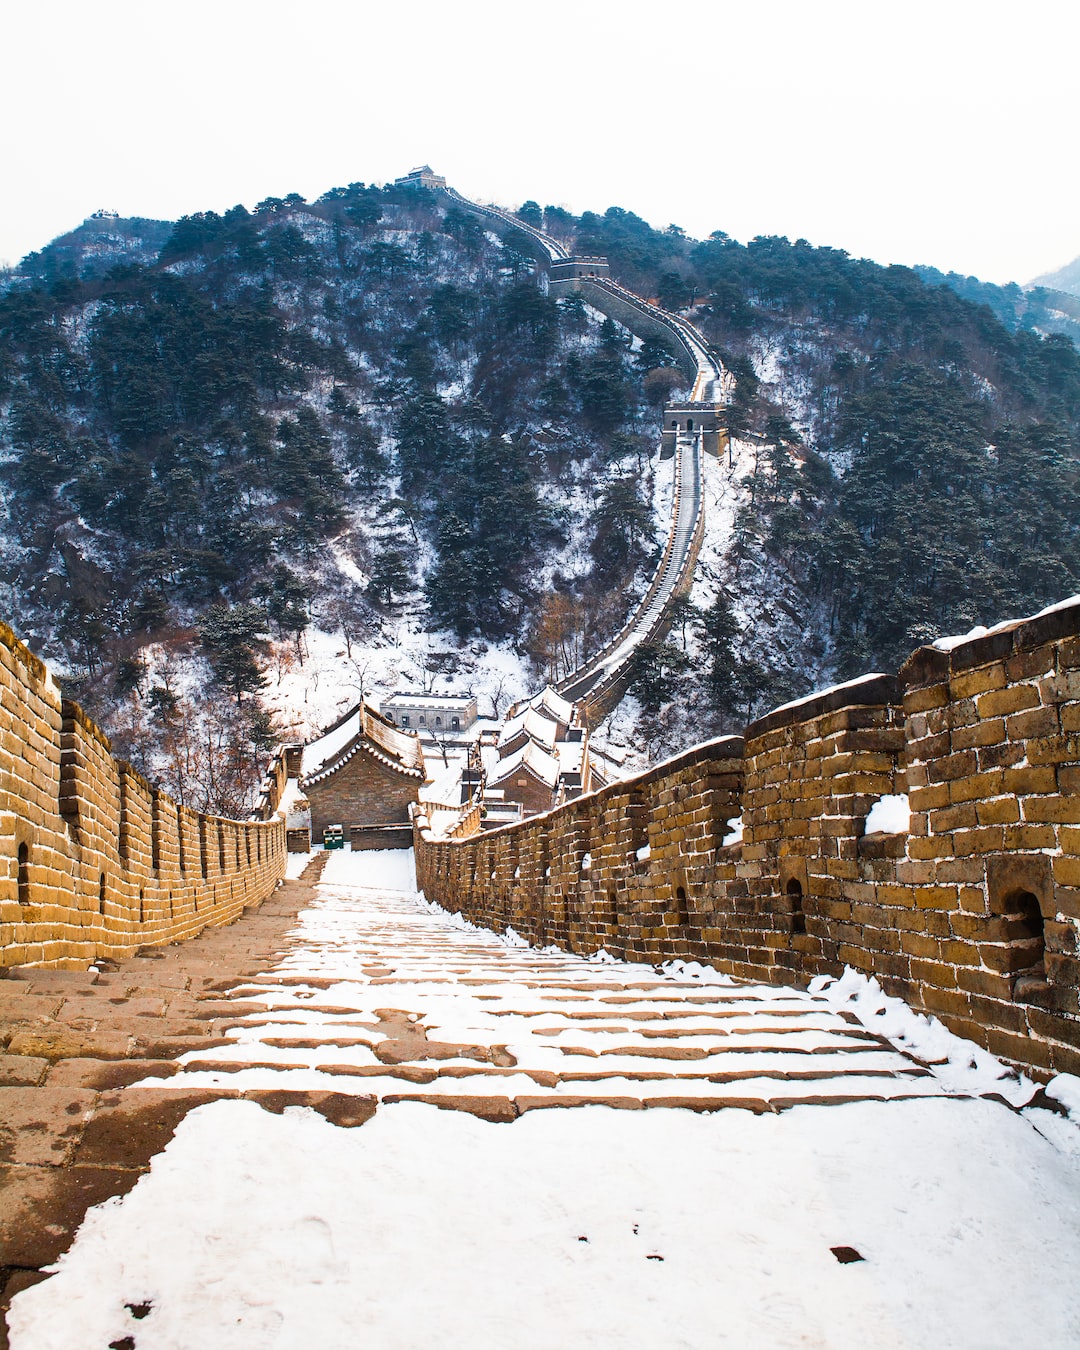 Erkundung des majestätischen Jinshanling-Abschnitts der Großen Mauer von China